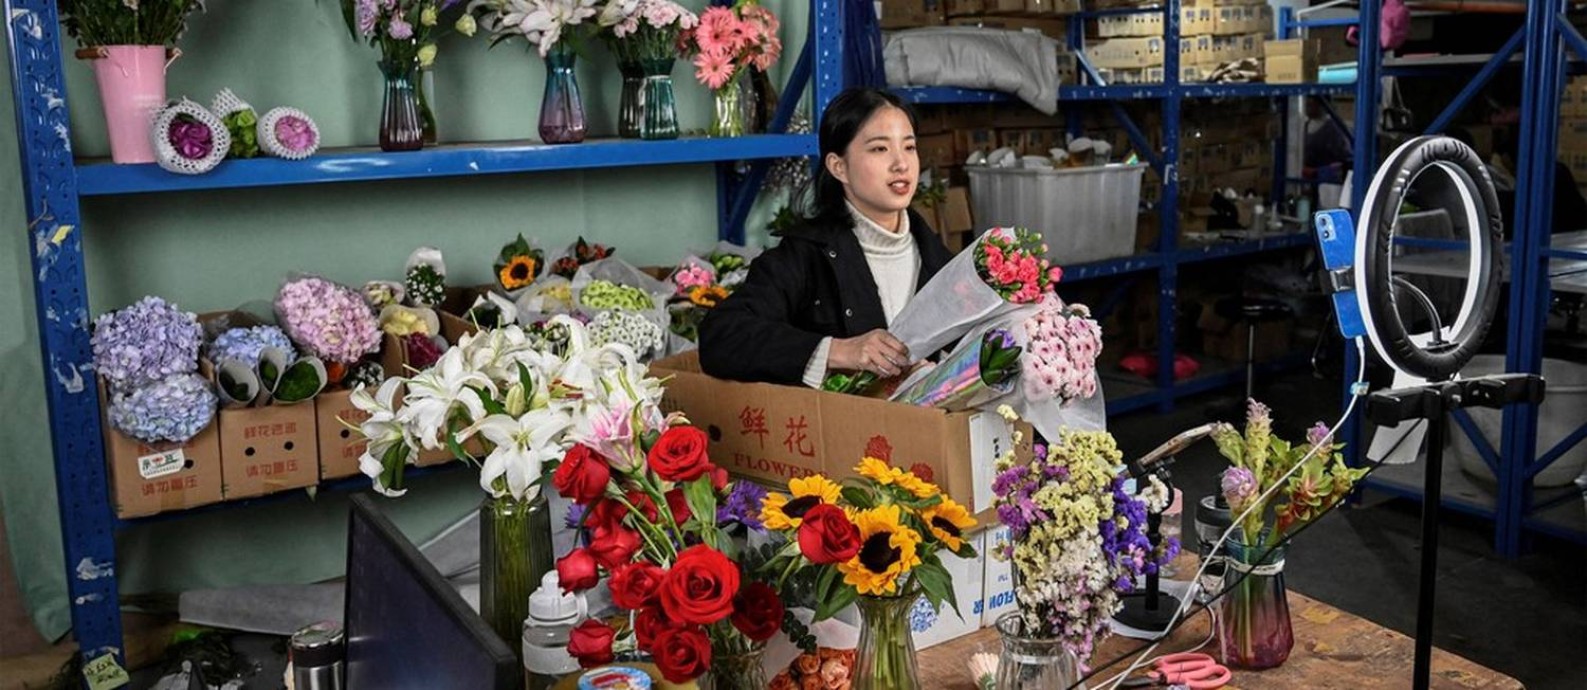 'Streamer' Cai Cai vende flores em estúdio improvisado no mercado de flores de Dounan Foto: AFP